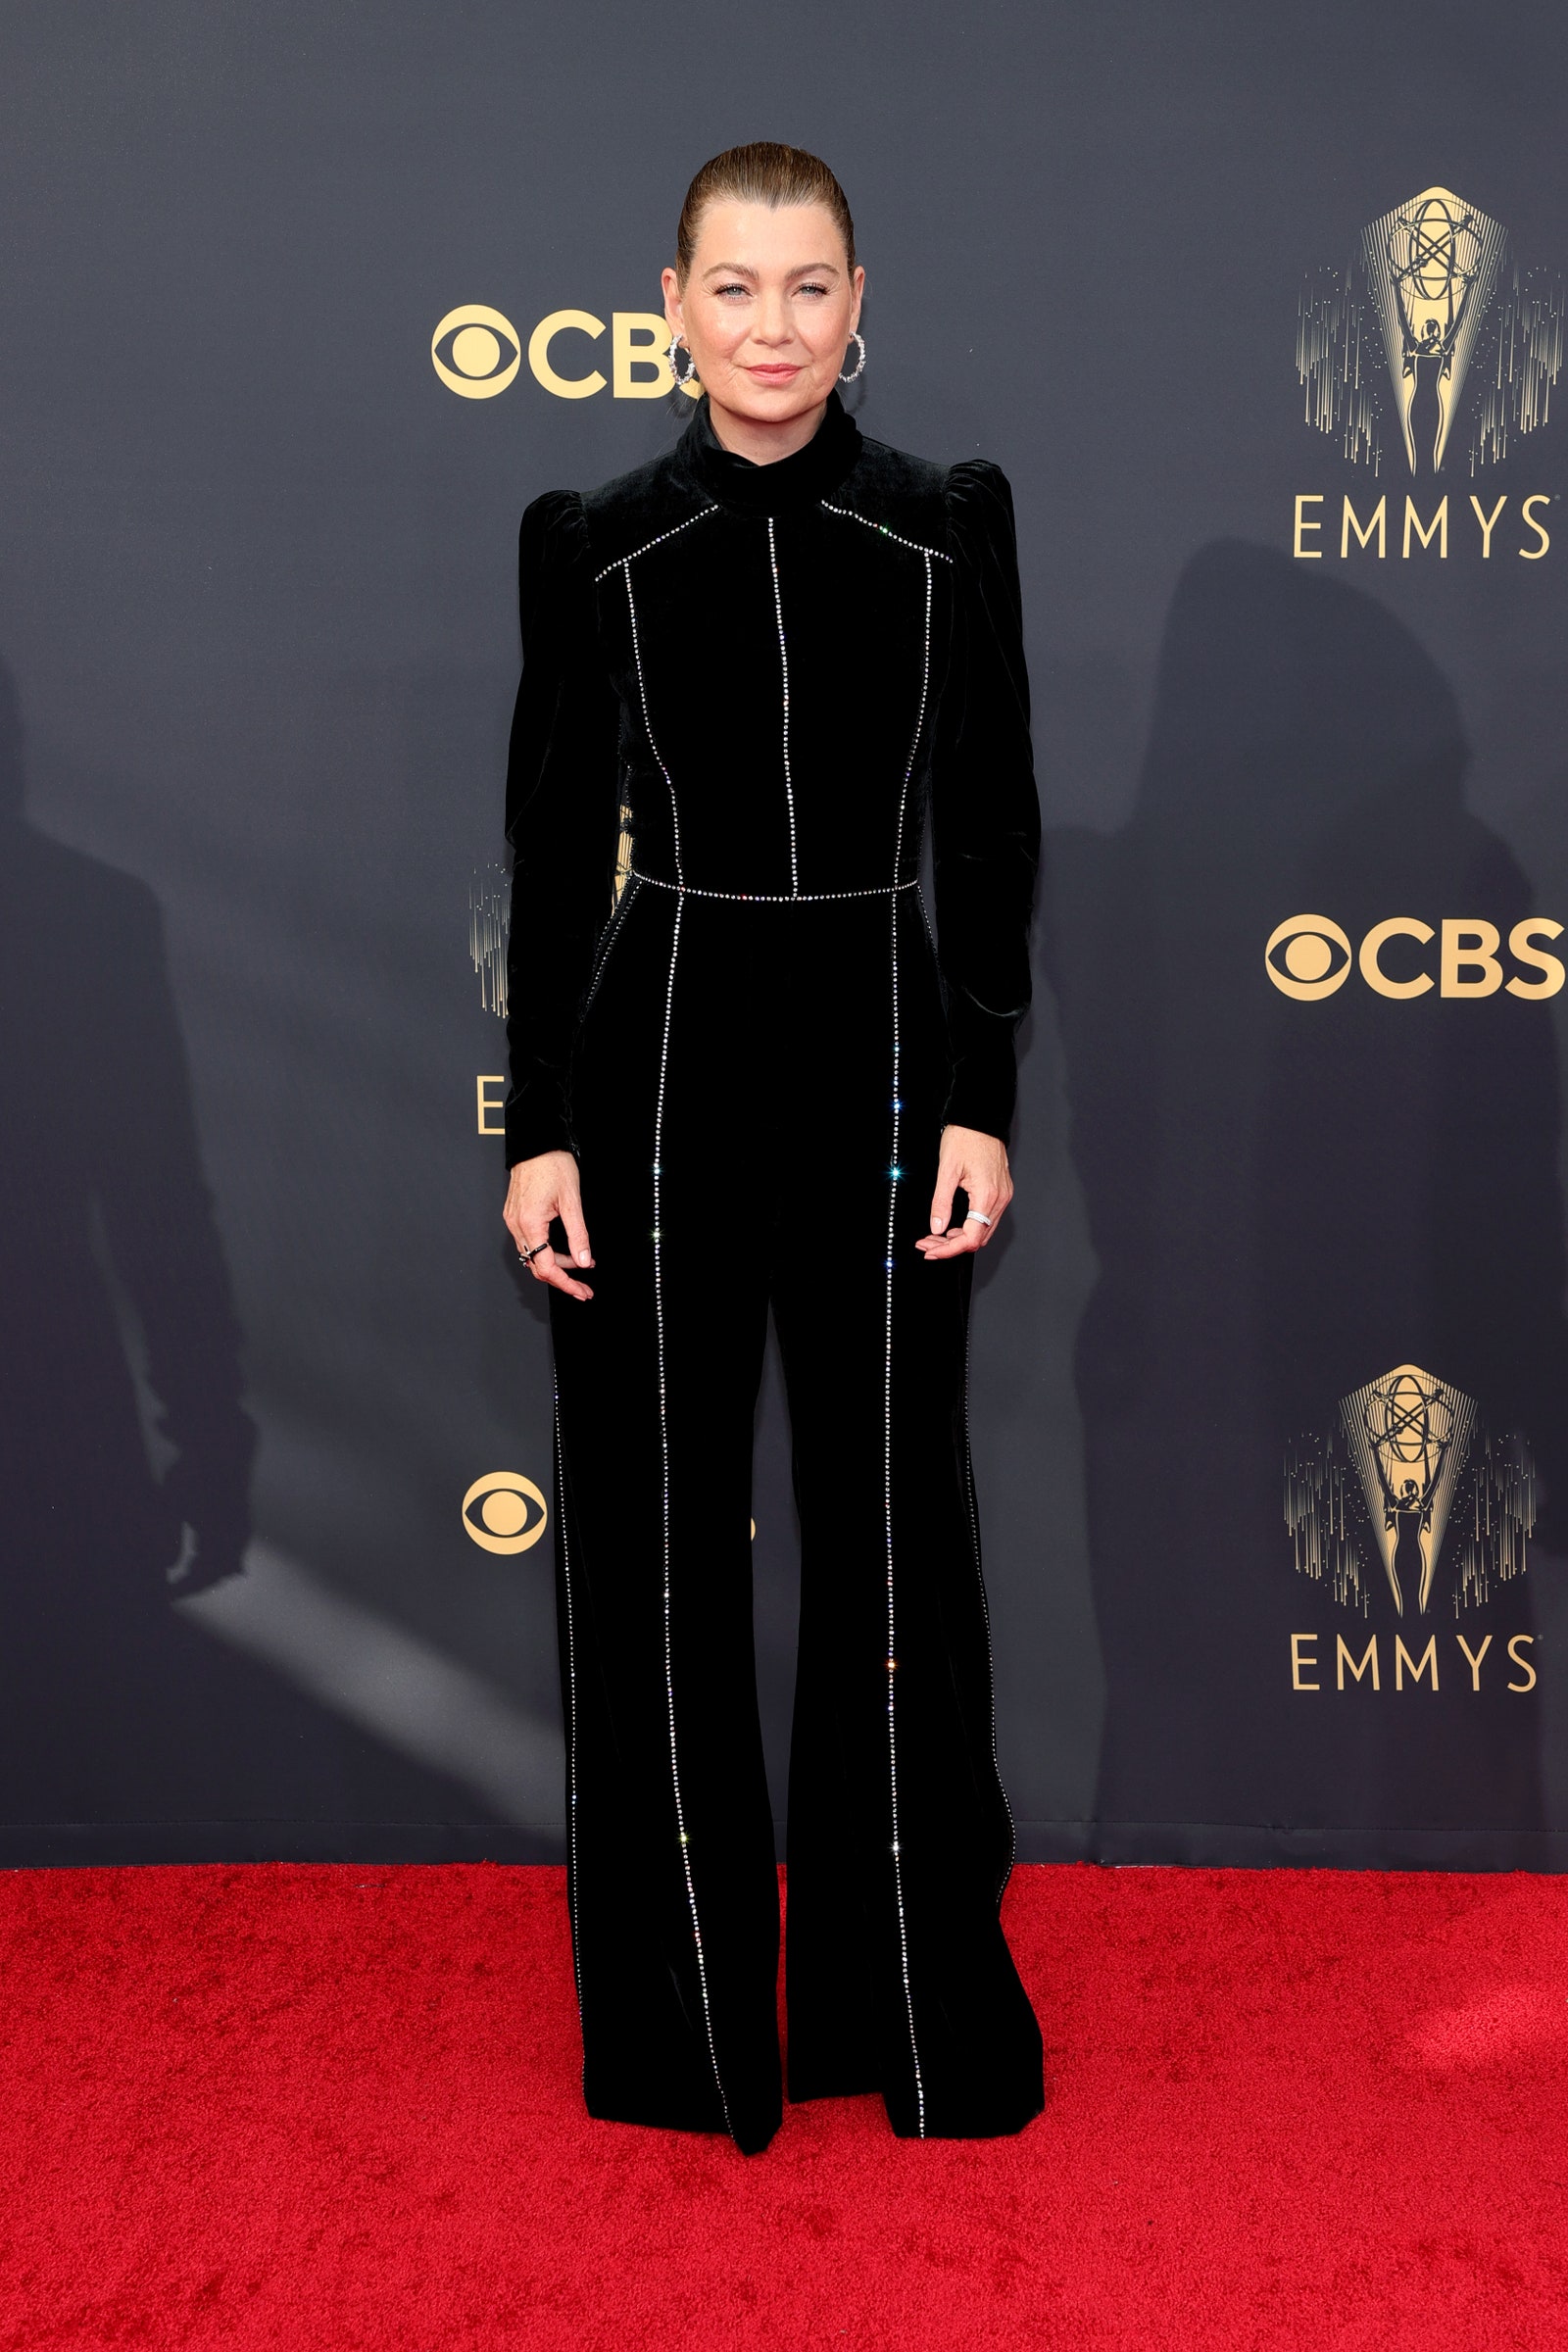 Ellen Pompeo at the 2021 Emmys Awards